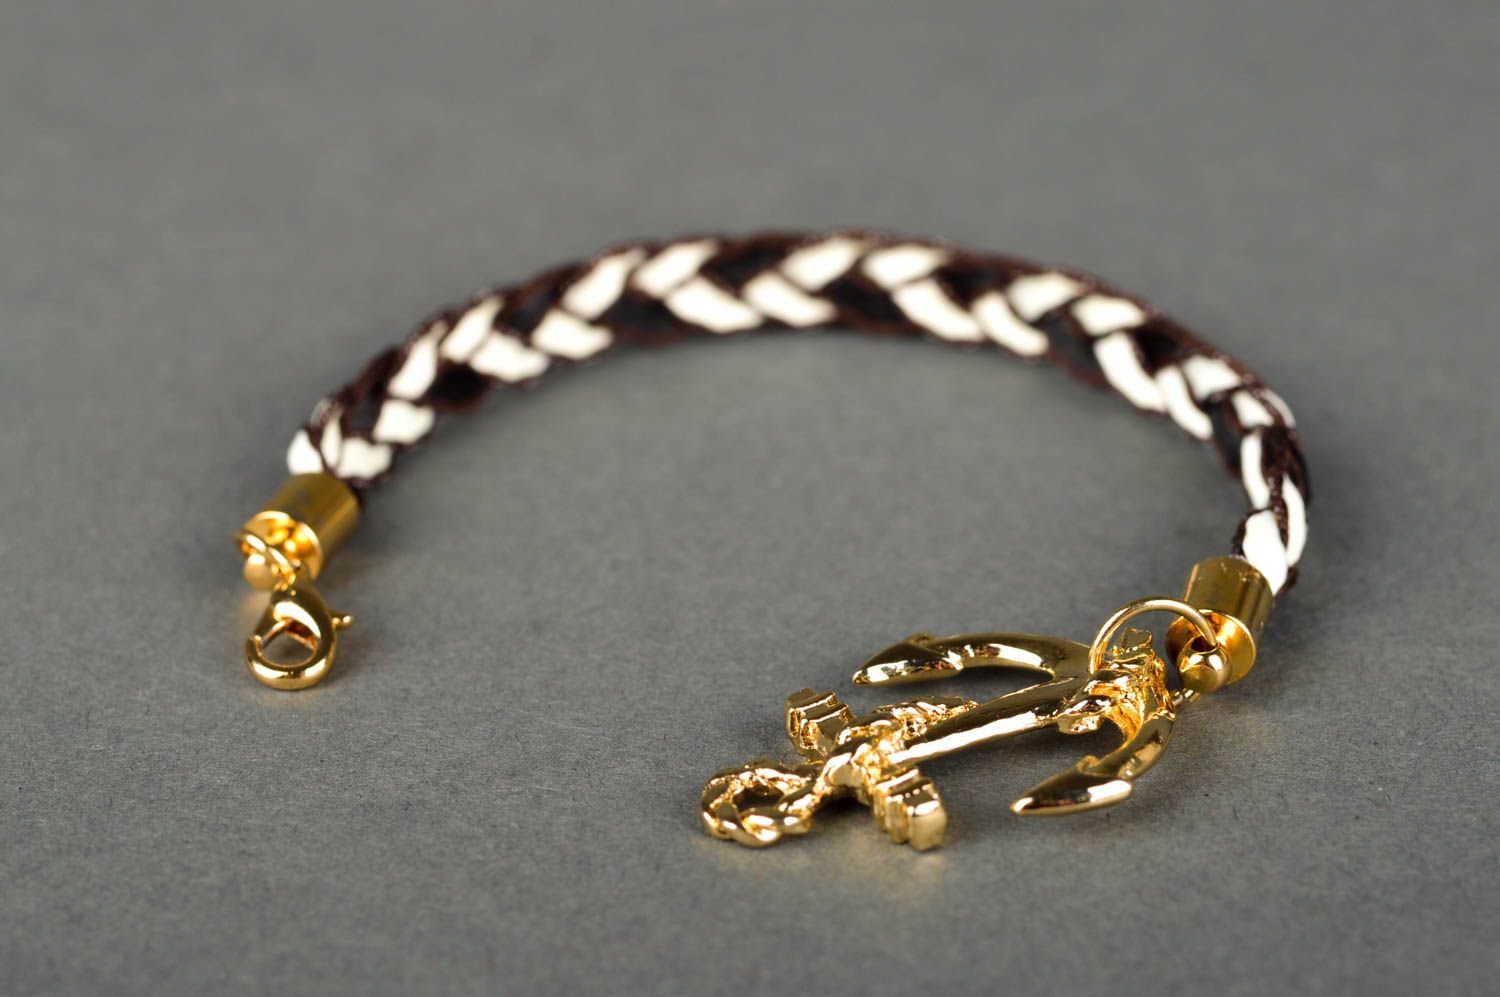 Handmade jewelry wrist bracelet womens bracelet fashion jewelry gifts for girls photo 5